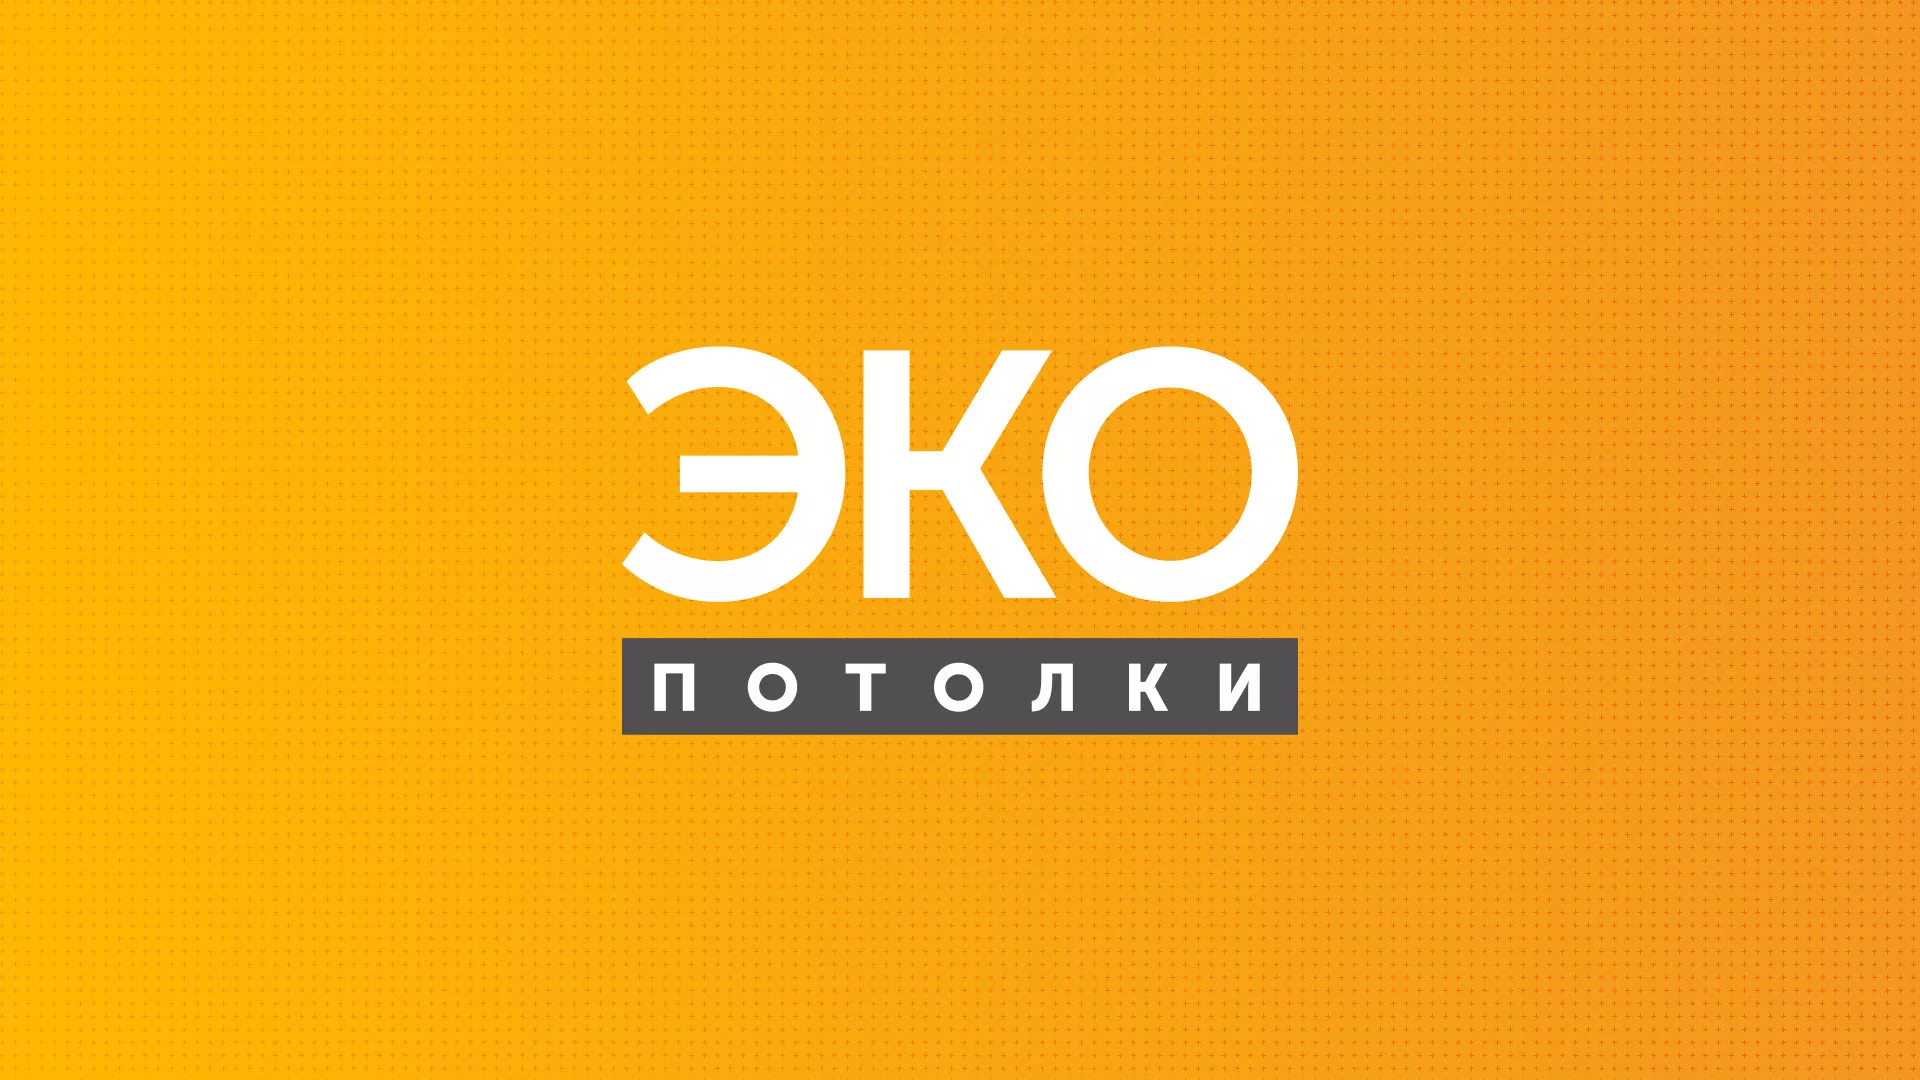 Разработка сайта по натяжным потолкам «Эко Потолки» в Донецке